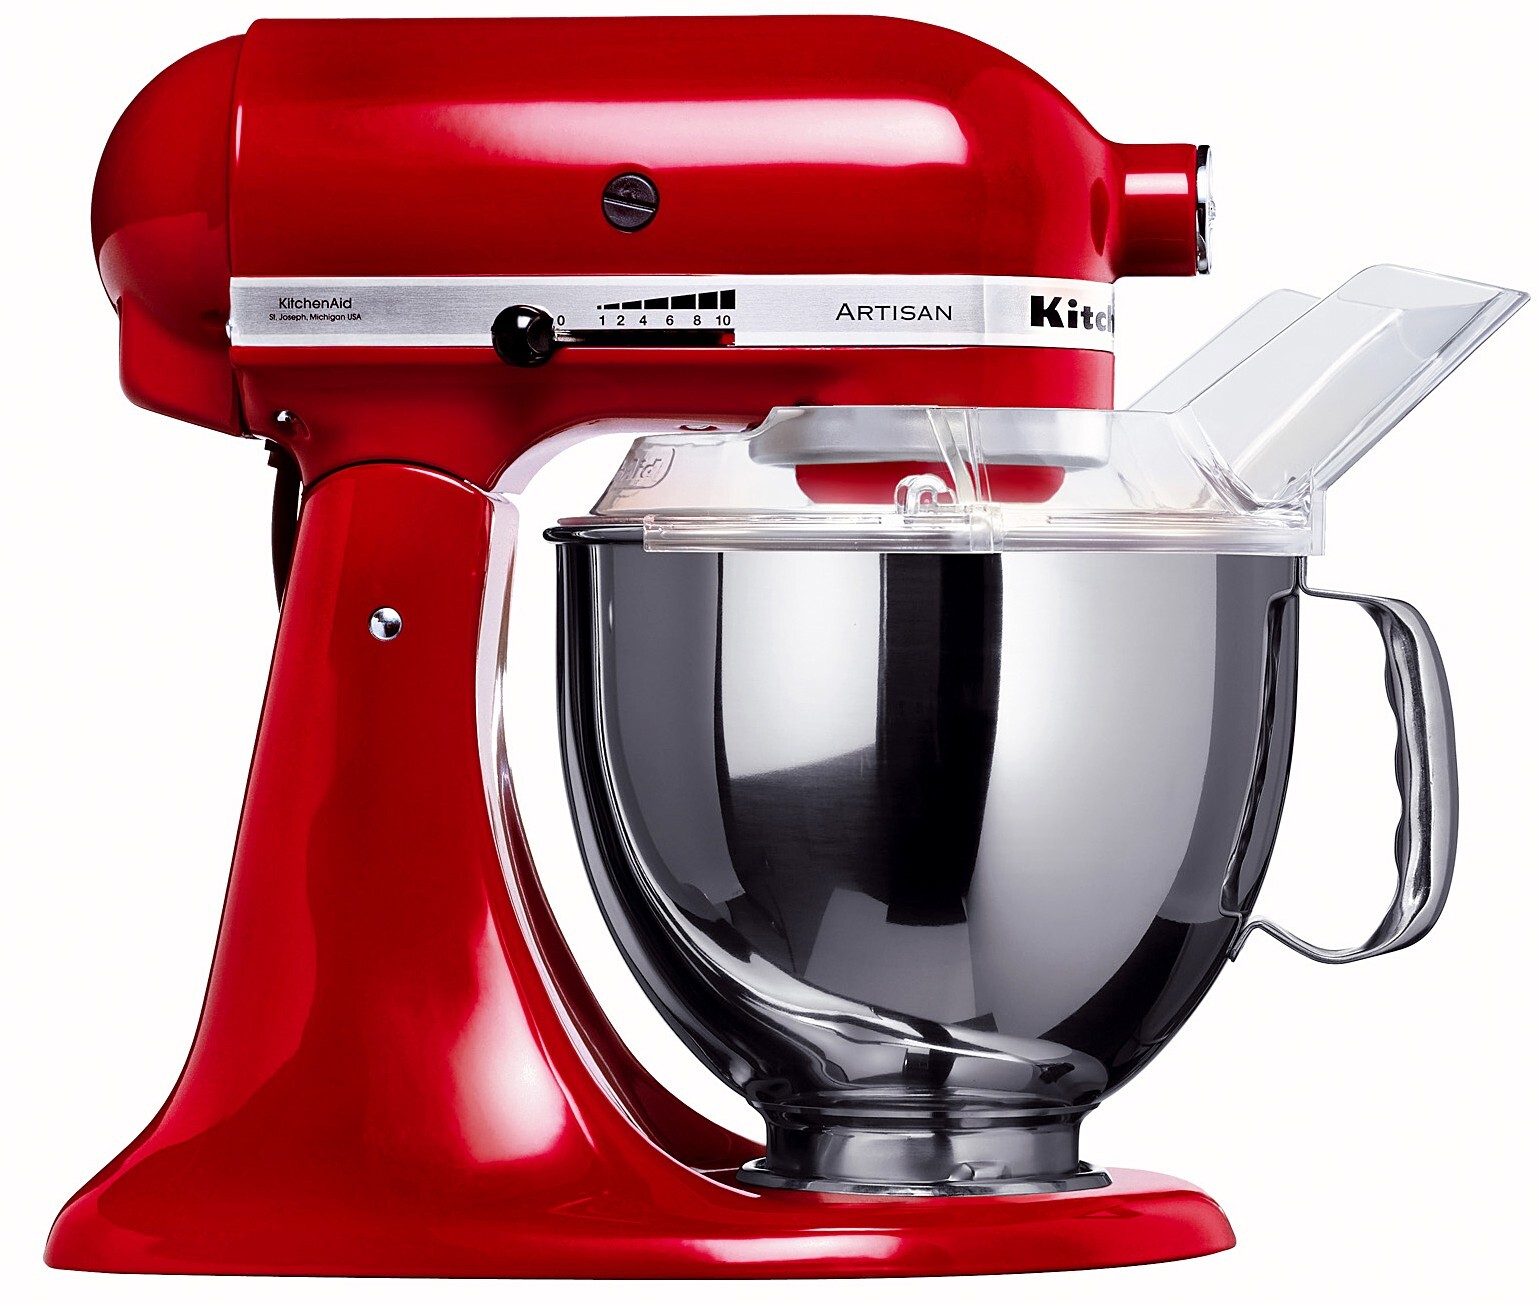 KitchenAid køkkenmaskine 5KSM150PSEER - rød | Elgiganten